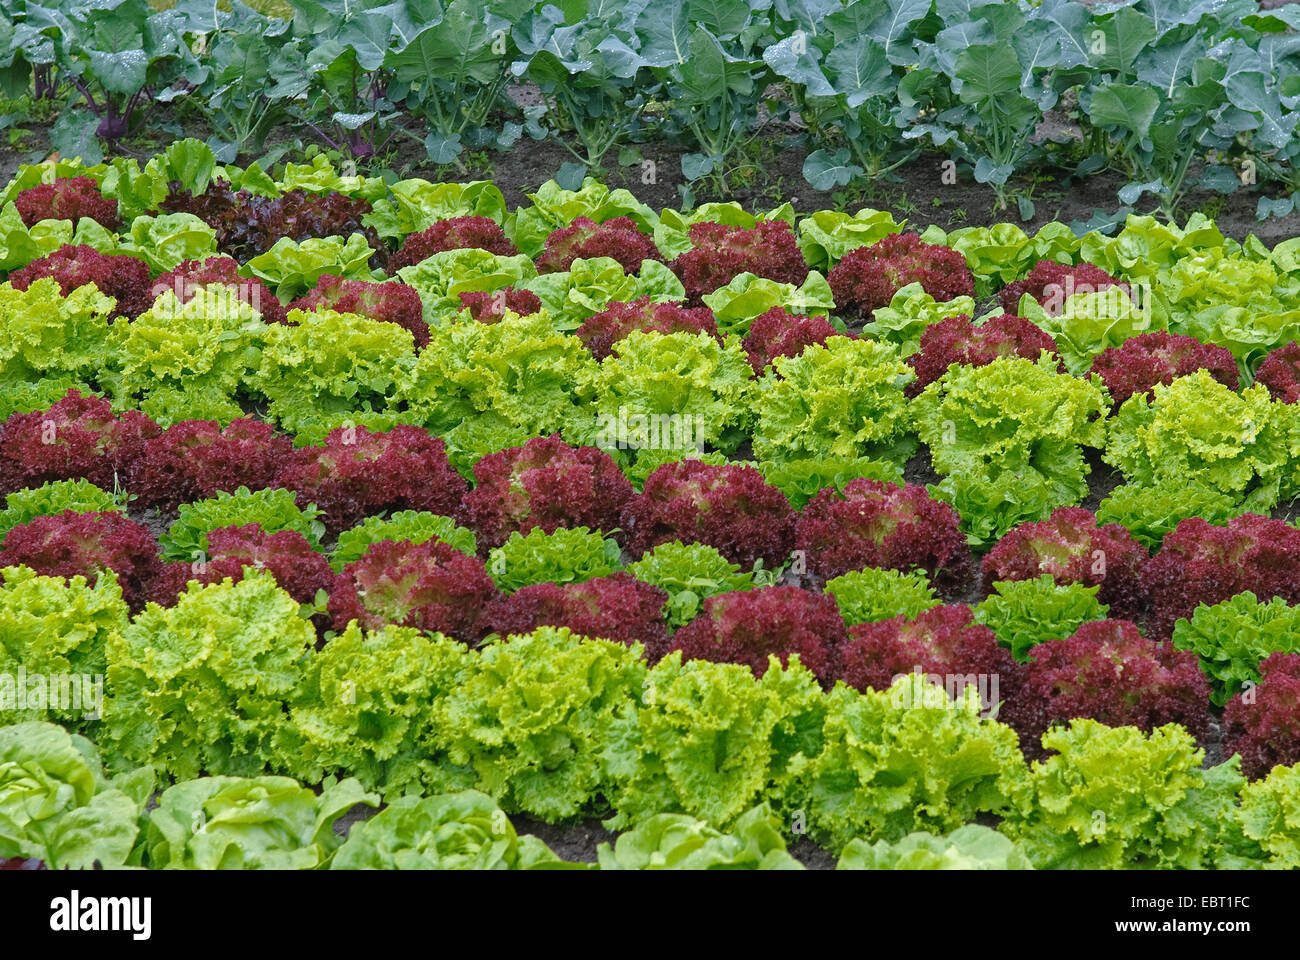 garden lettuce (Lactuca sativa 'Lollo rosso', Lactuca sativa Lollo rosso), Sorte Lollo Rosso, vegetable patch Stock Photo